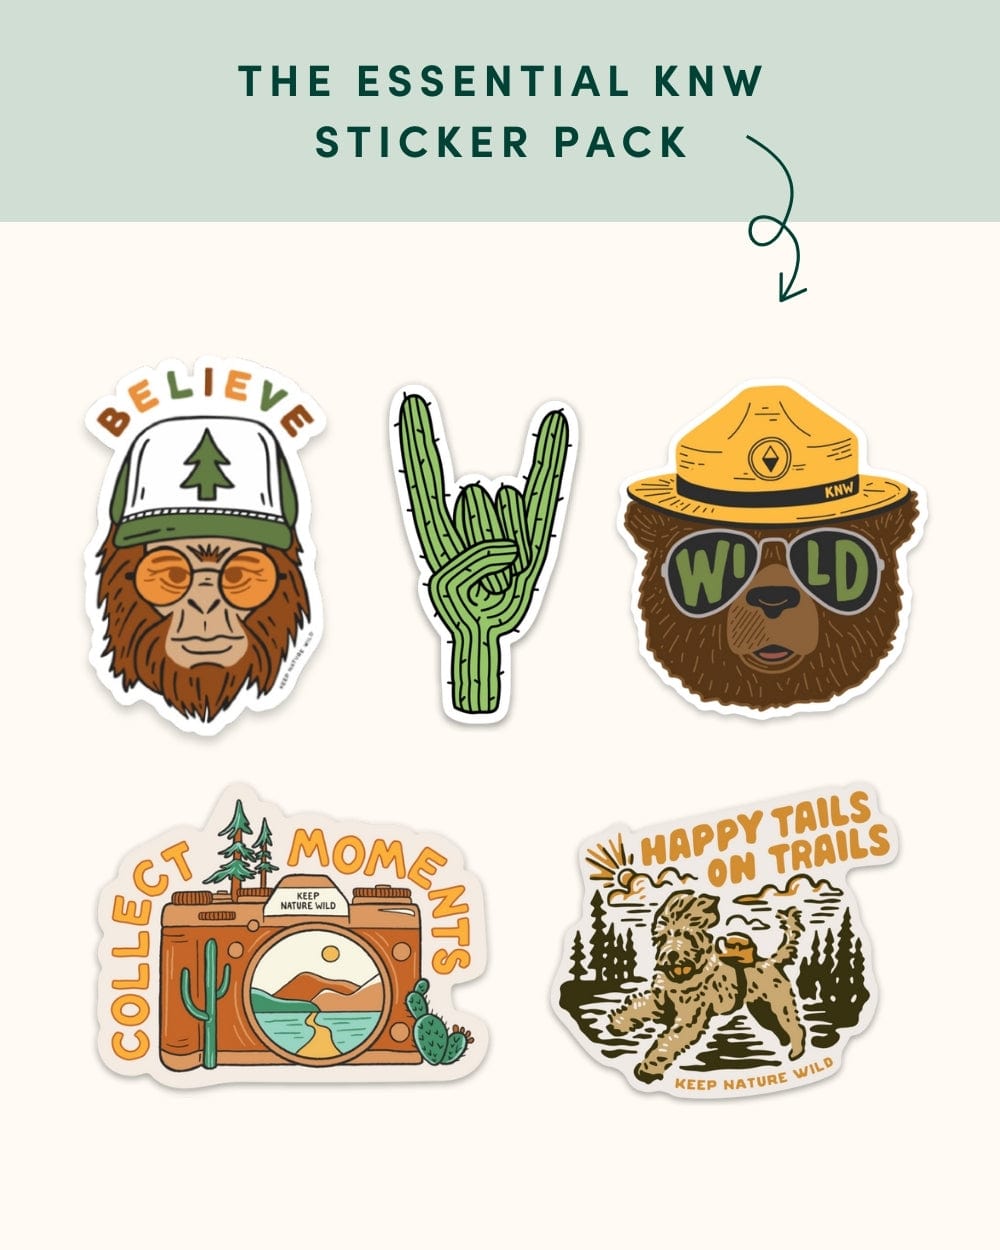 Keep Nature Wild Sticker Pack The Essentials Sticker Bundle | 5-Pack